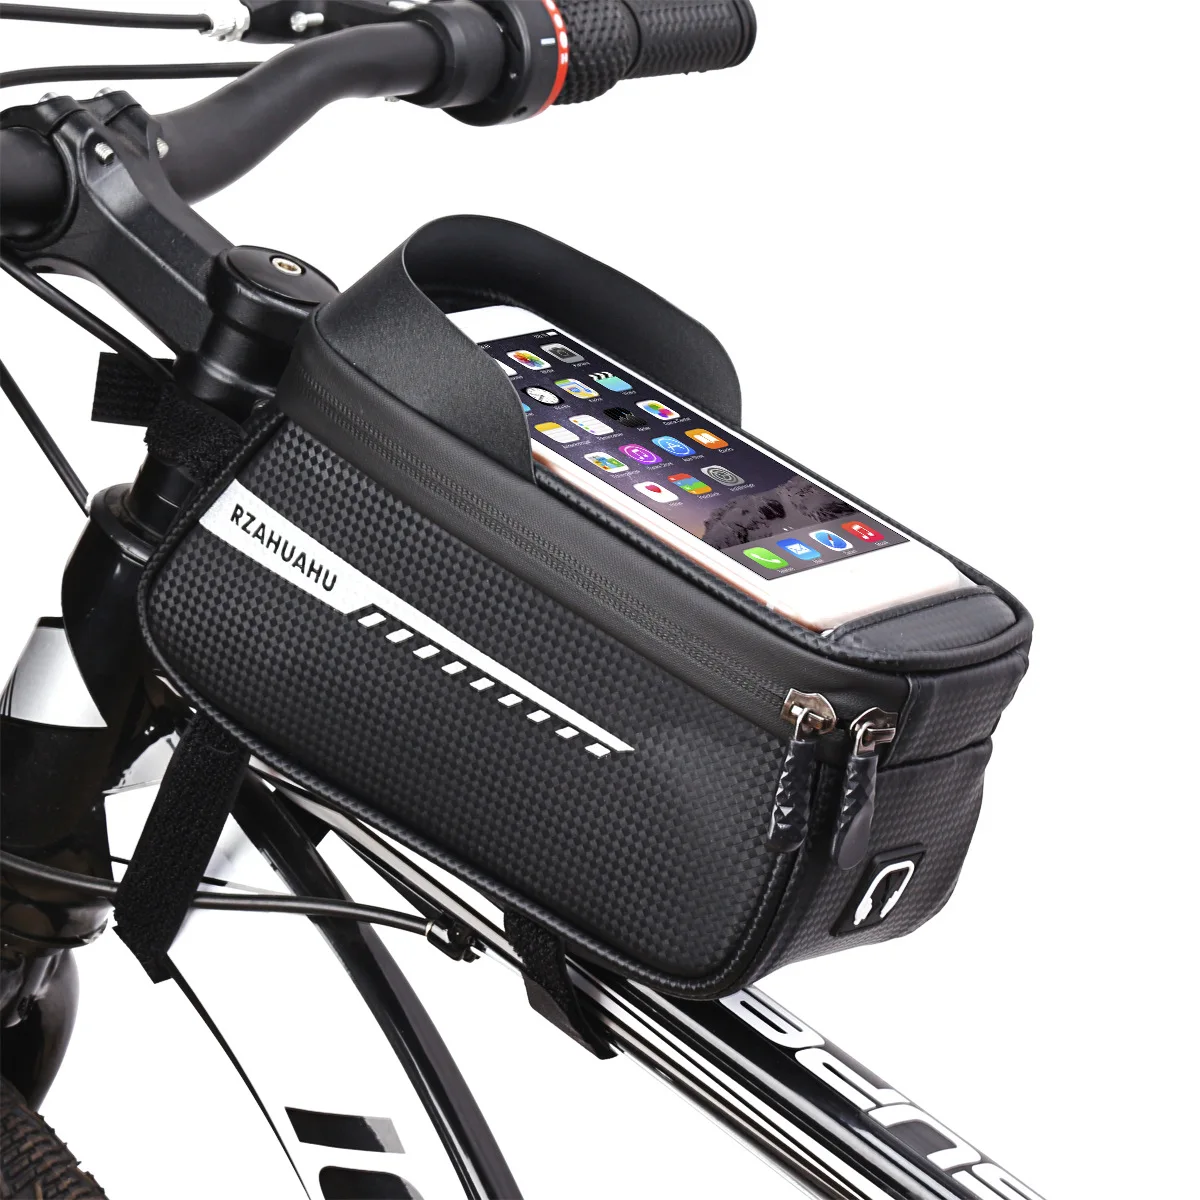 

Waterproof Bike Cycling Bicycle Storage Saddle Bag Fits Phones Below 6.0 inches, Black, red, grey, blue